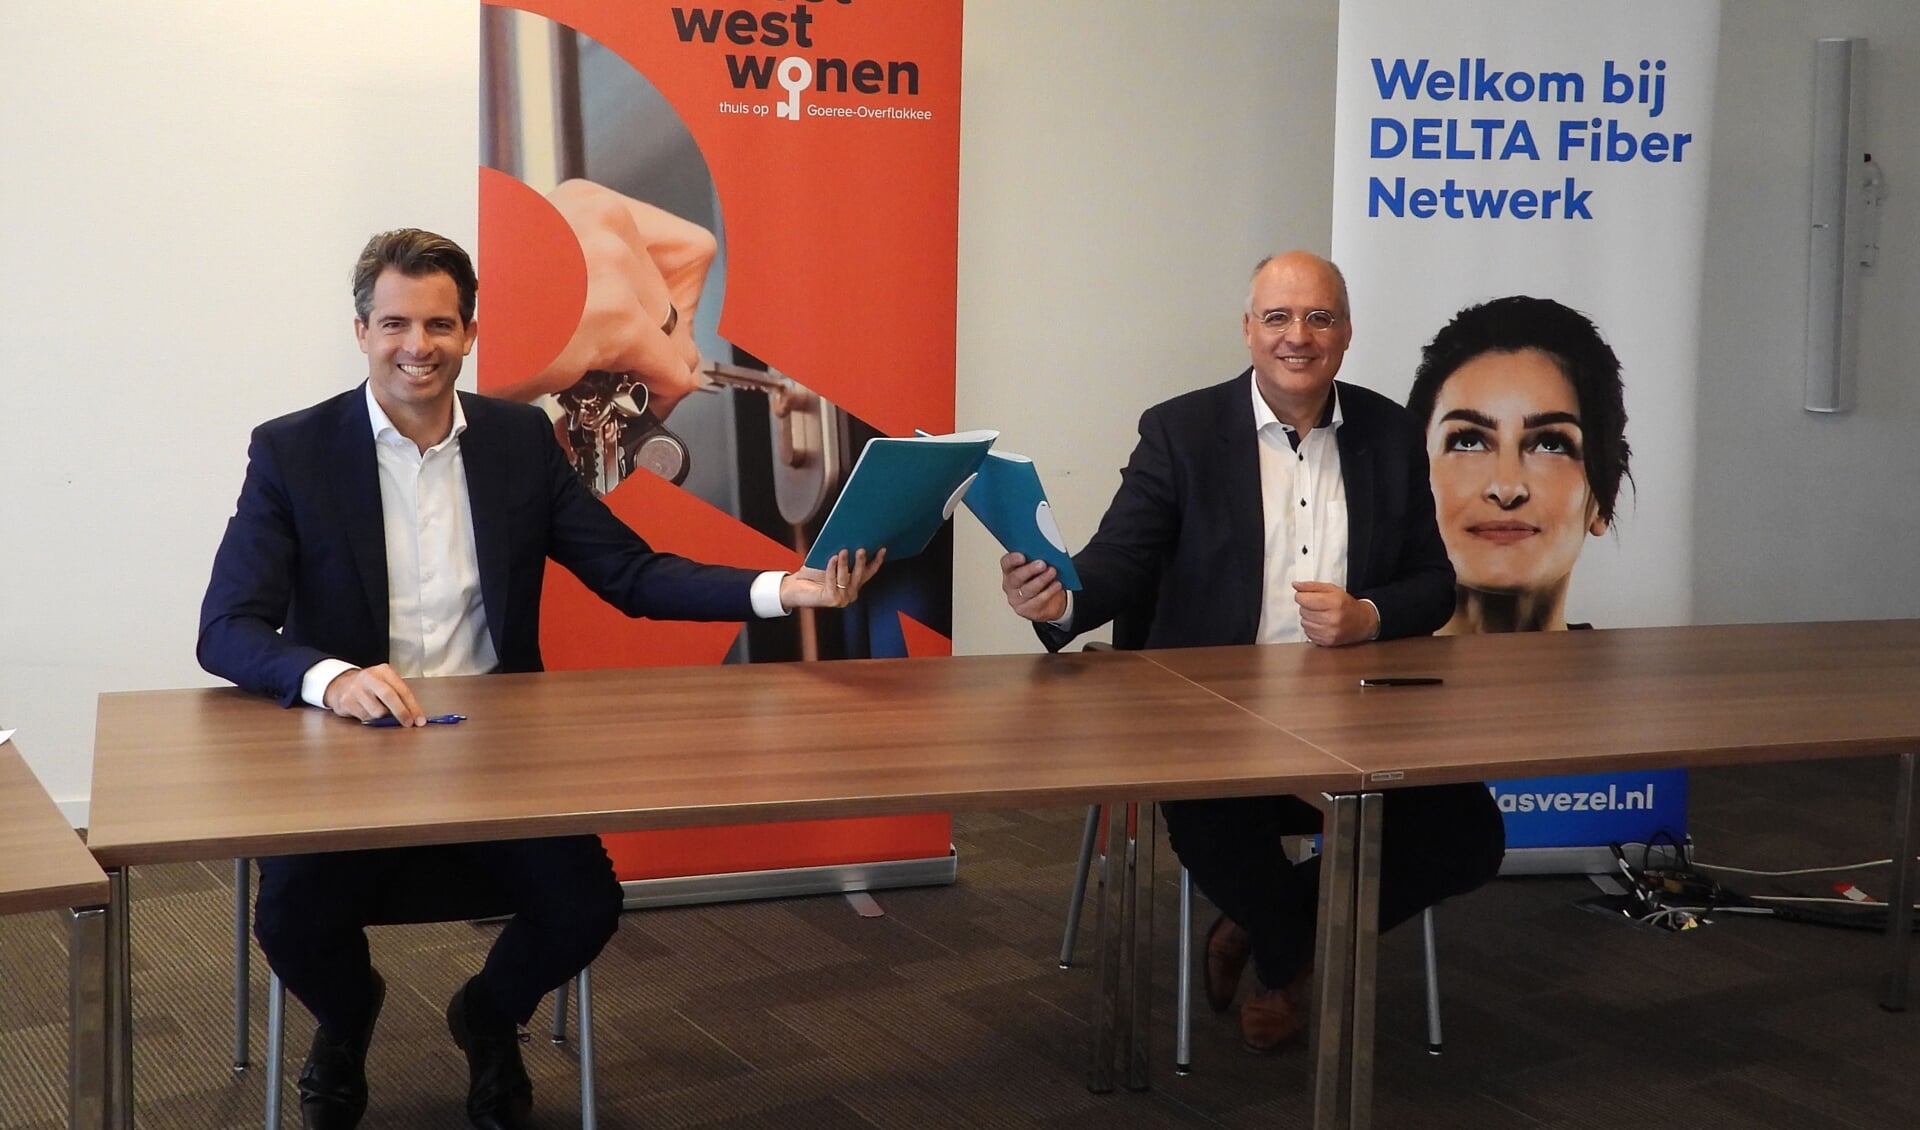 Ondertekening overeenkomst: v.l.n.r. Michiel Admiraal, DELTA Fiber Netwerk en Kees van Dam, Oost West Wonen. 